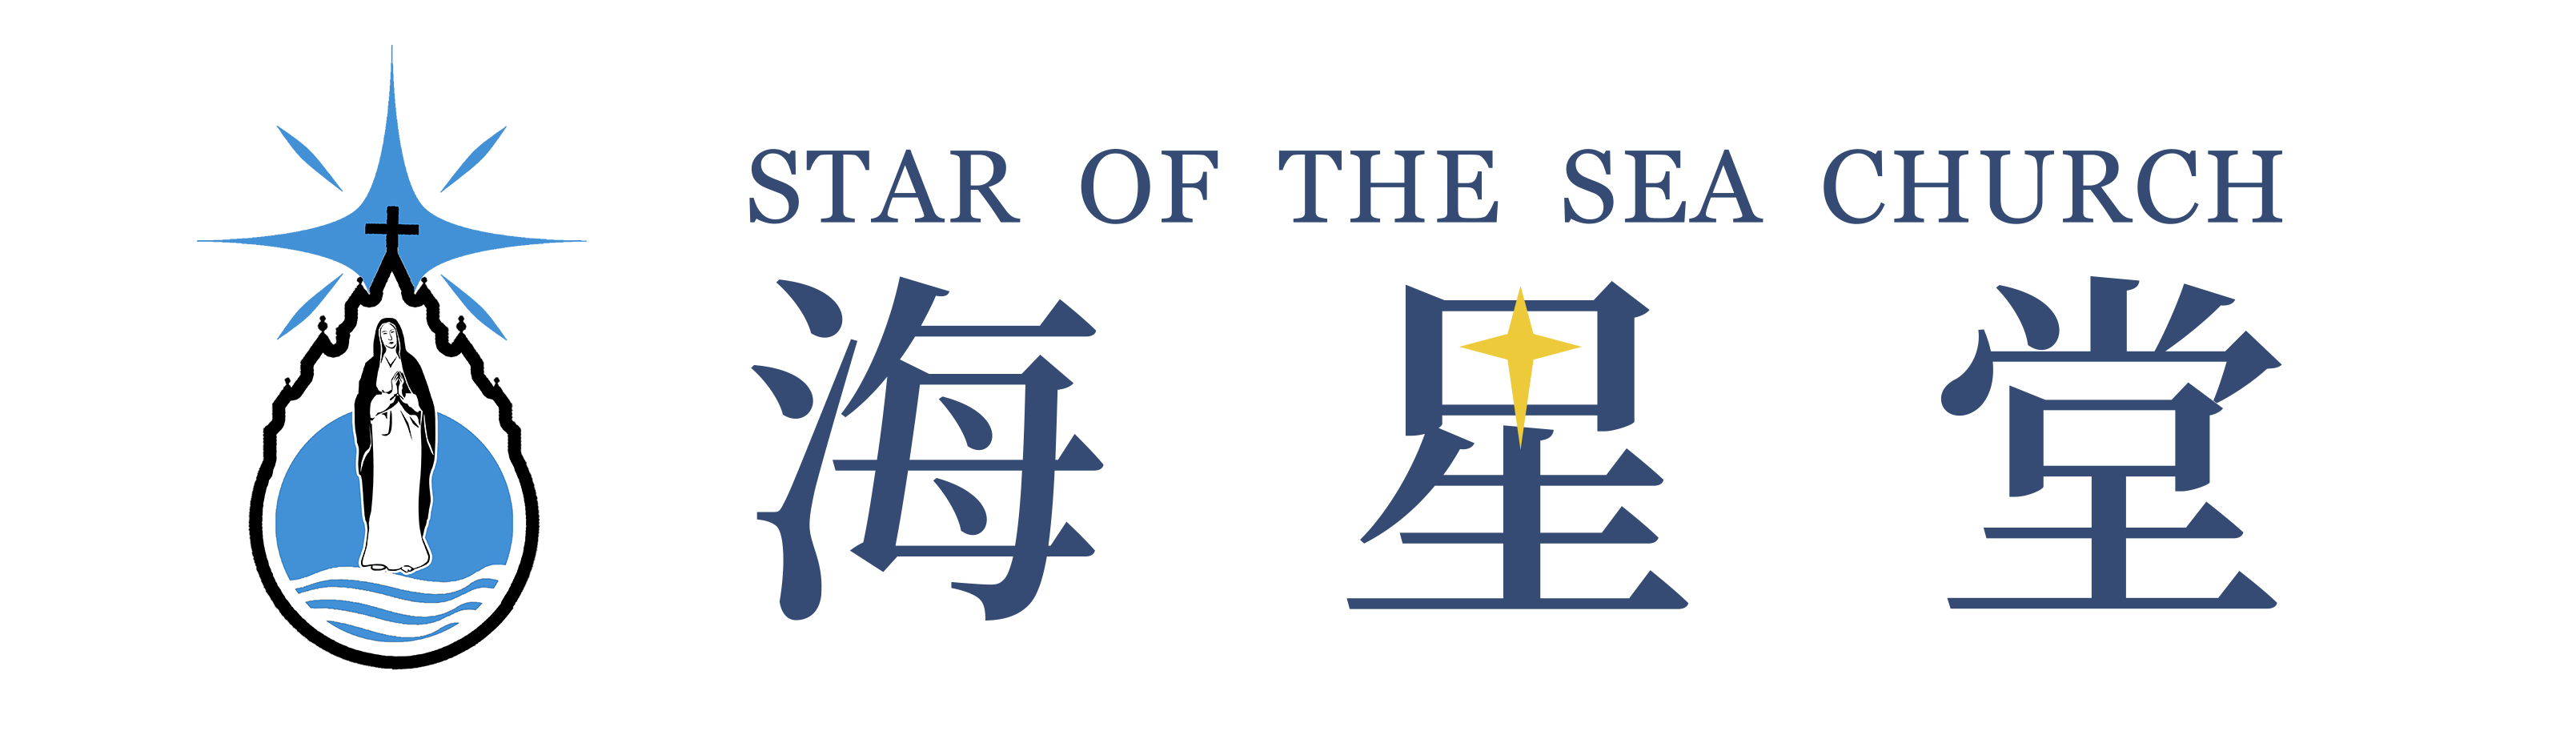 海星堂 Star of the Sea Church